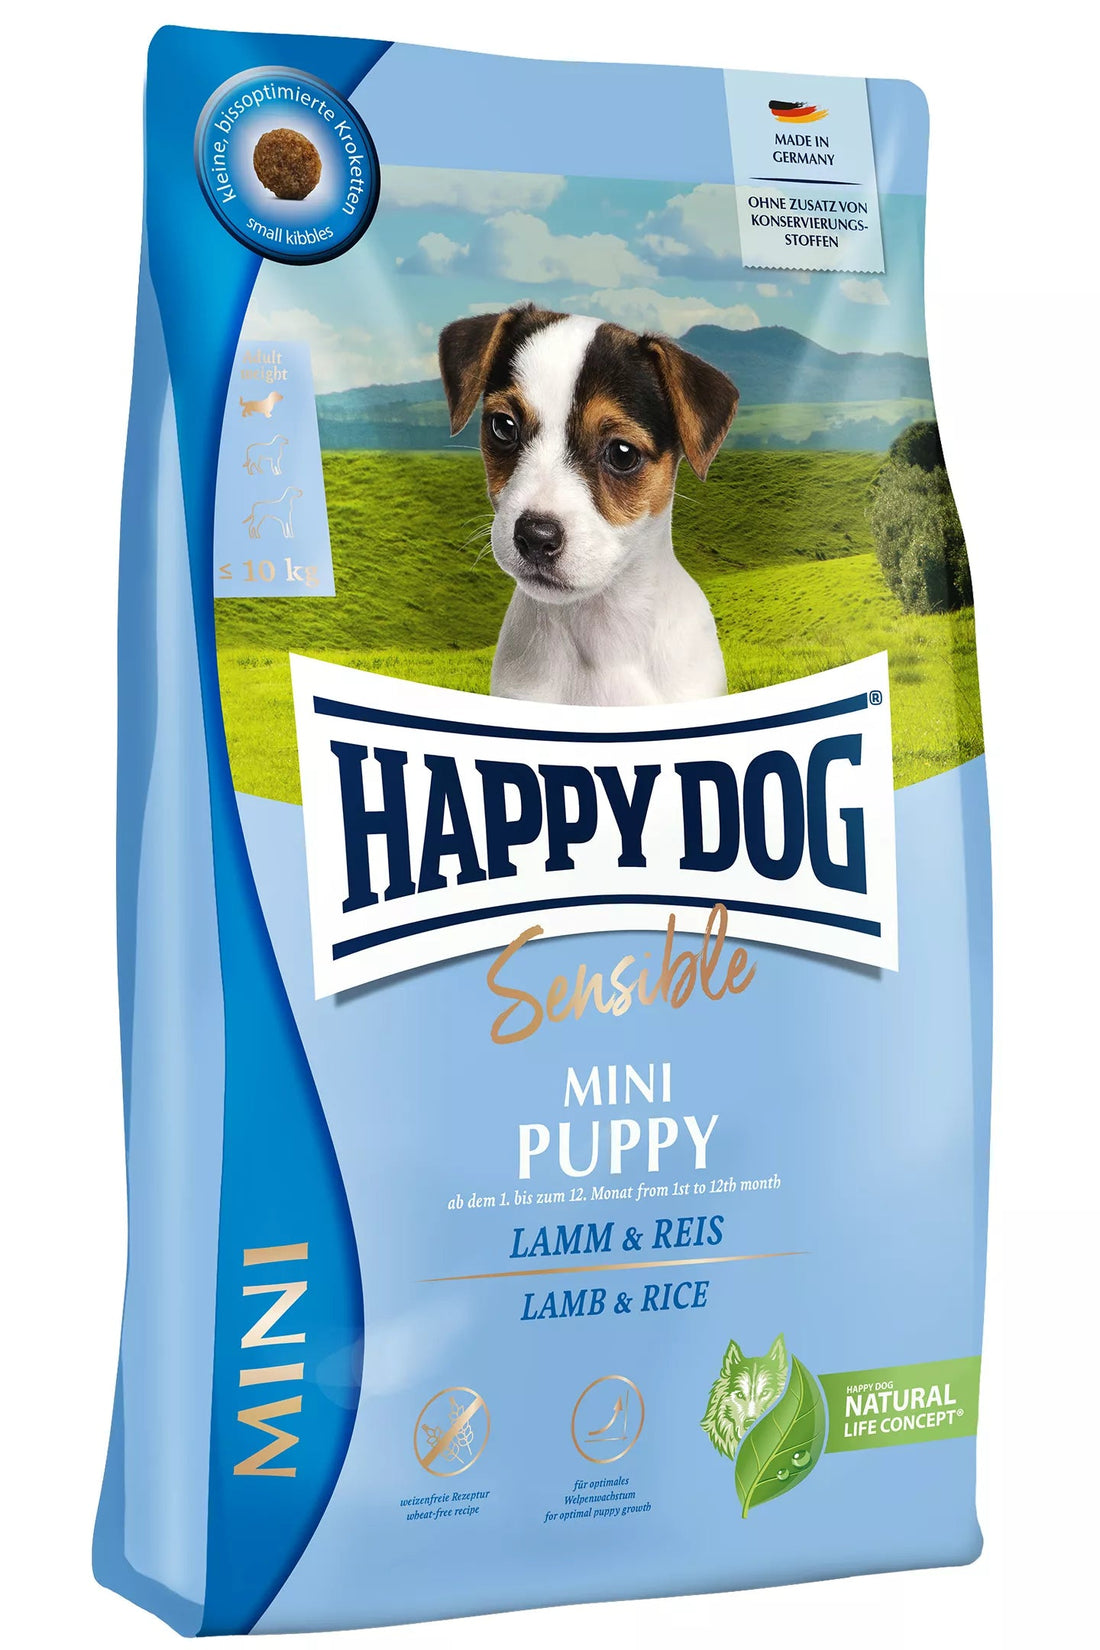 Happy Dog Sensible Mini Puppy Lam/Ris - AV-Larsen